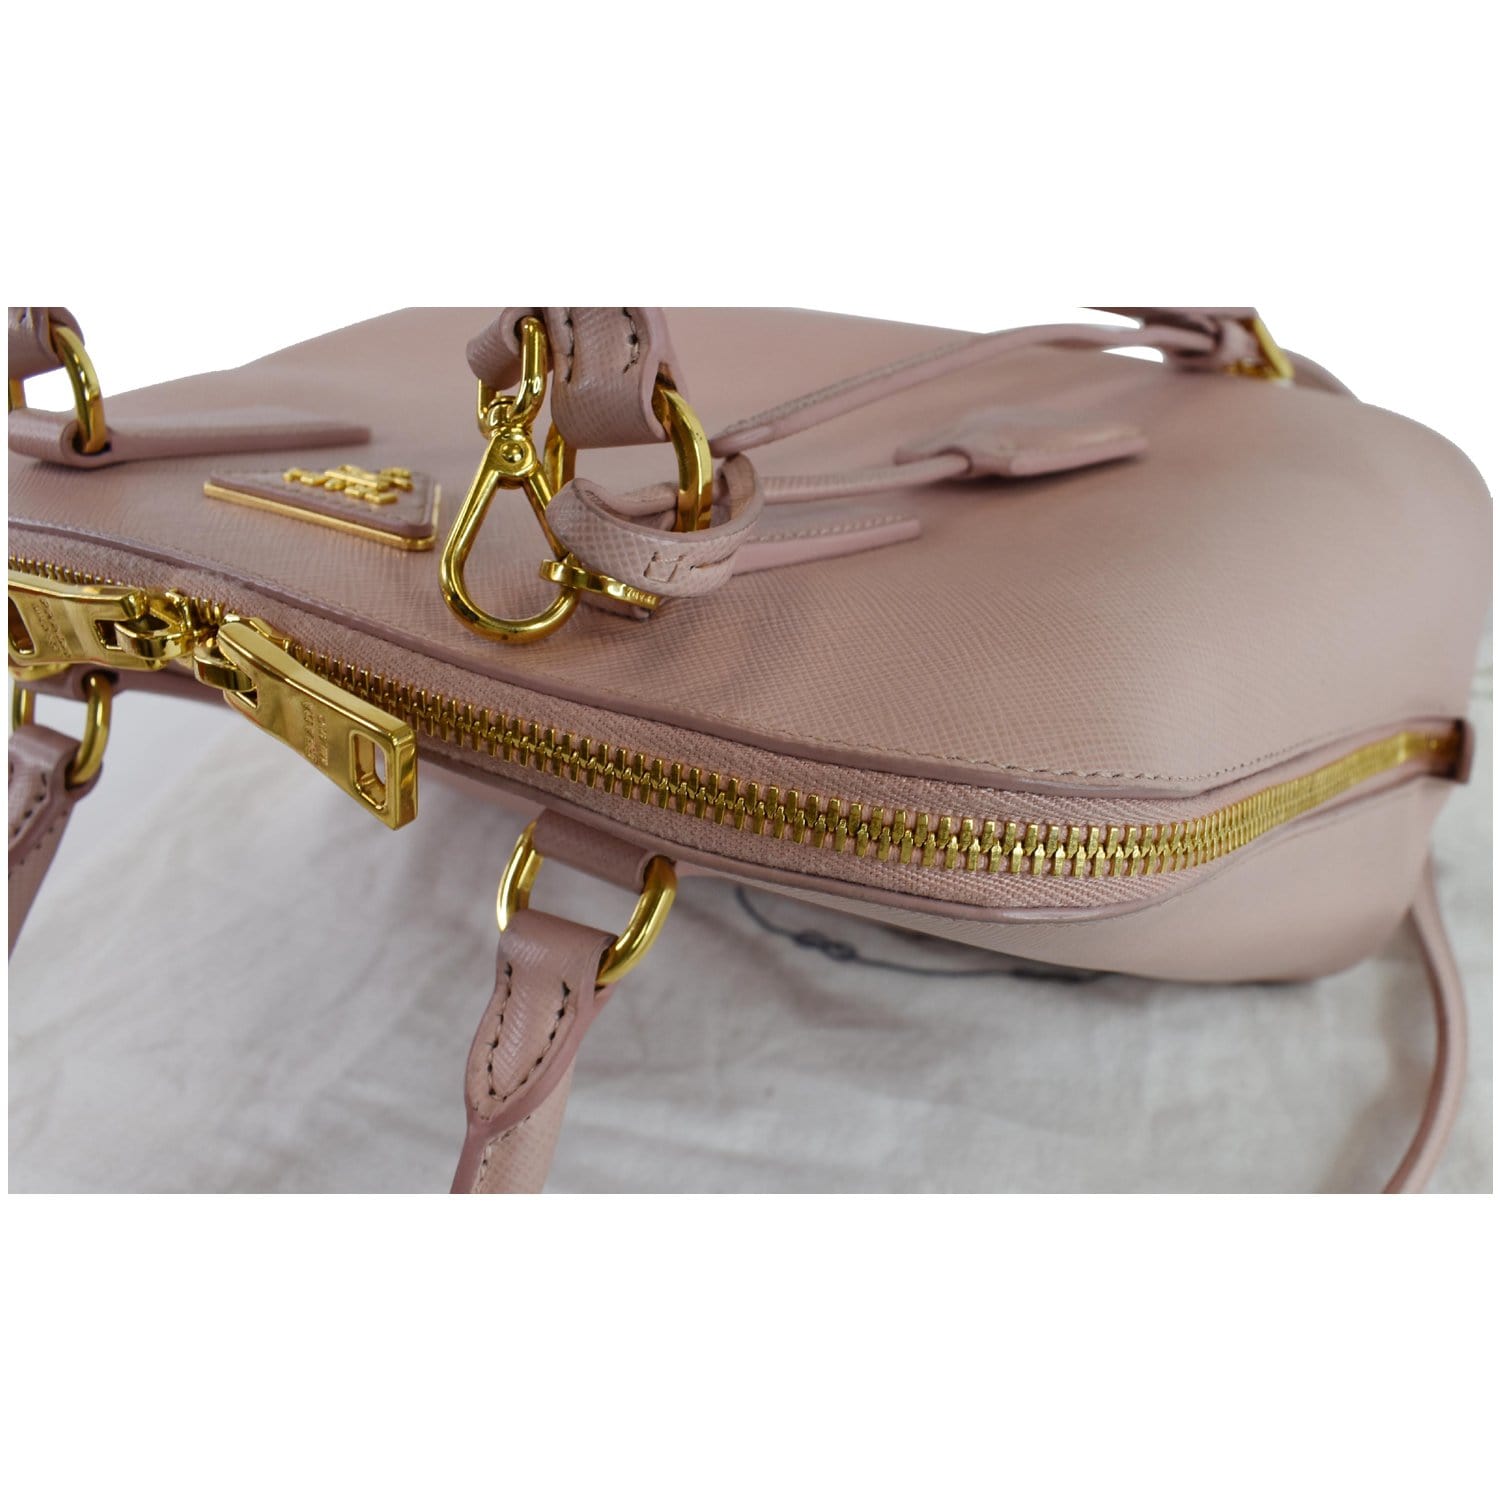 What Goes Around Comes Around Prada Pink Saffiano Promenade Small Handbag